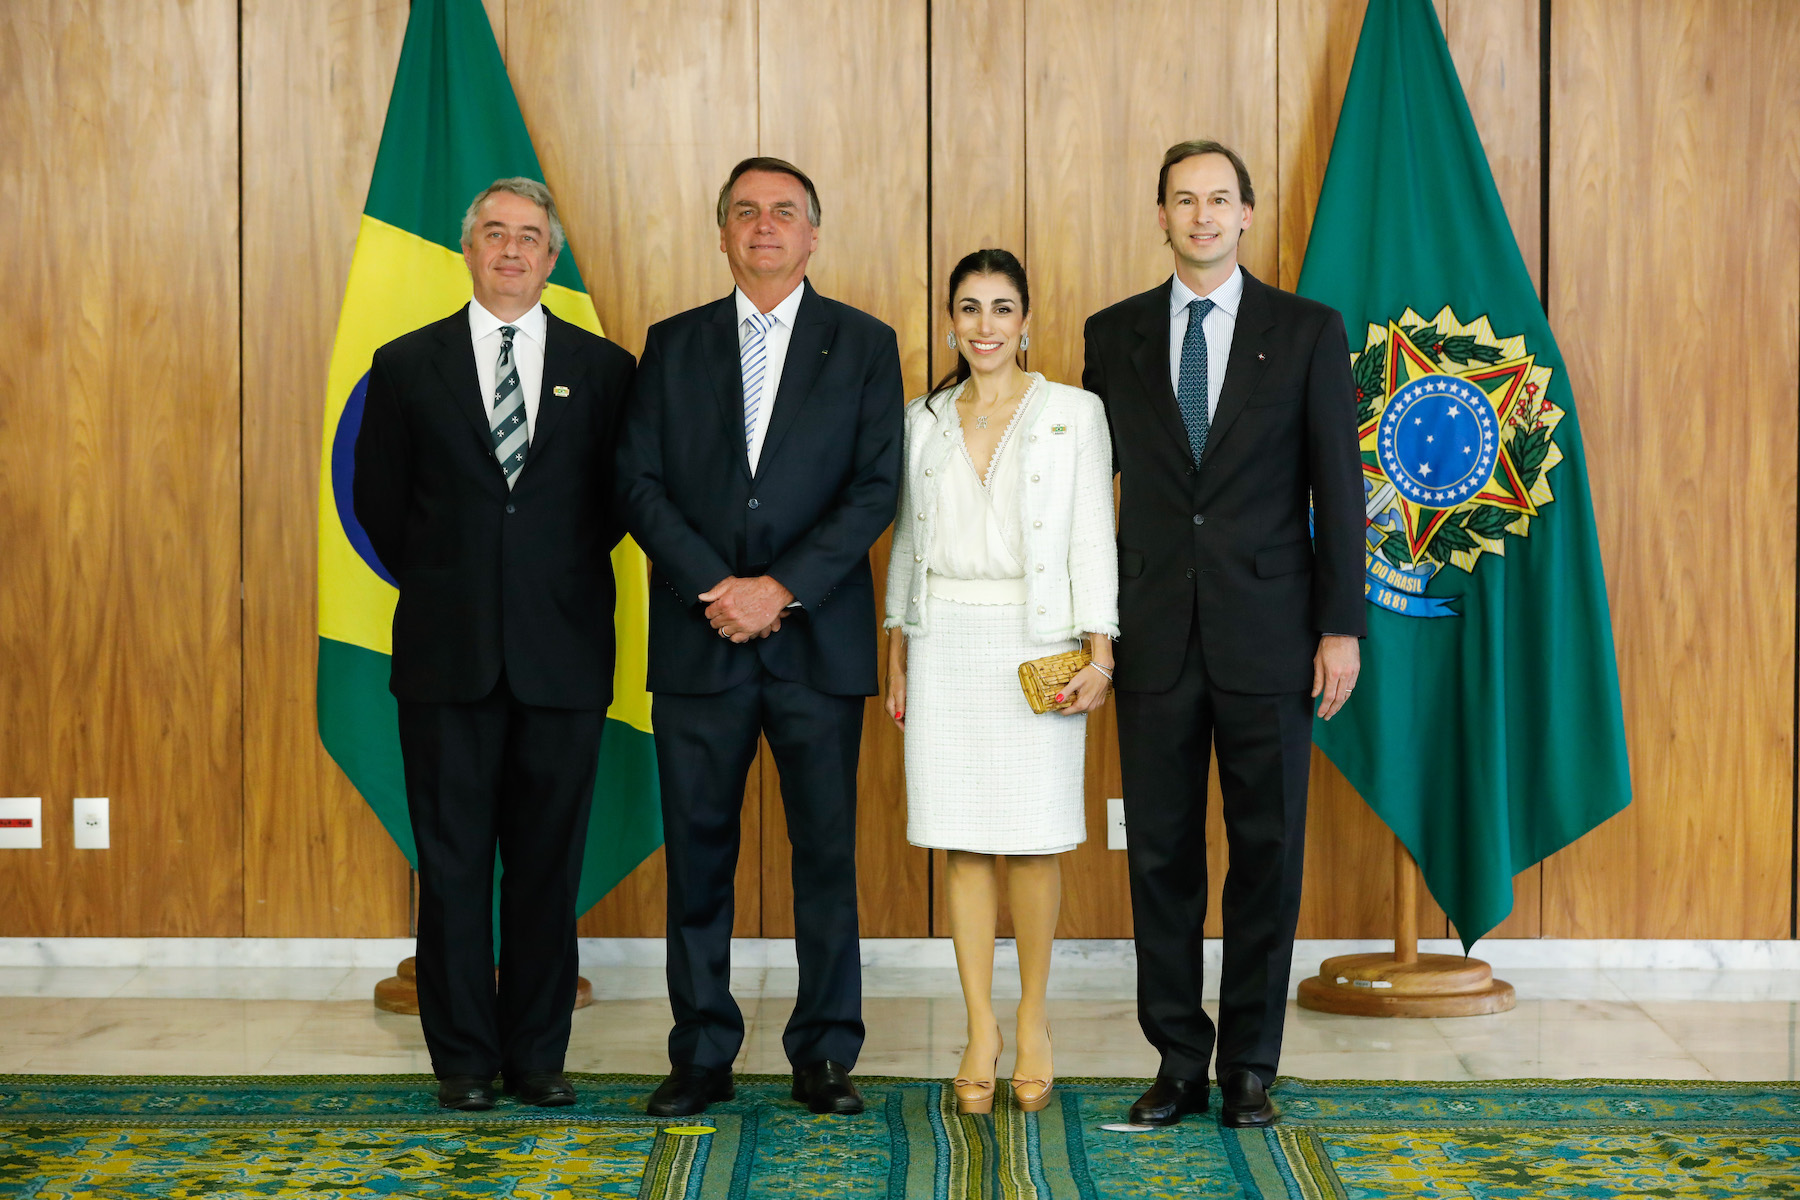 L’ambassadeur de l’Ordre de Malte auprès de la République Fédérative du Brésil a présenté ses lettres de creance